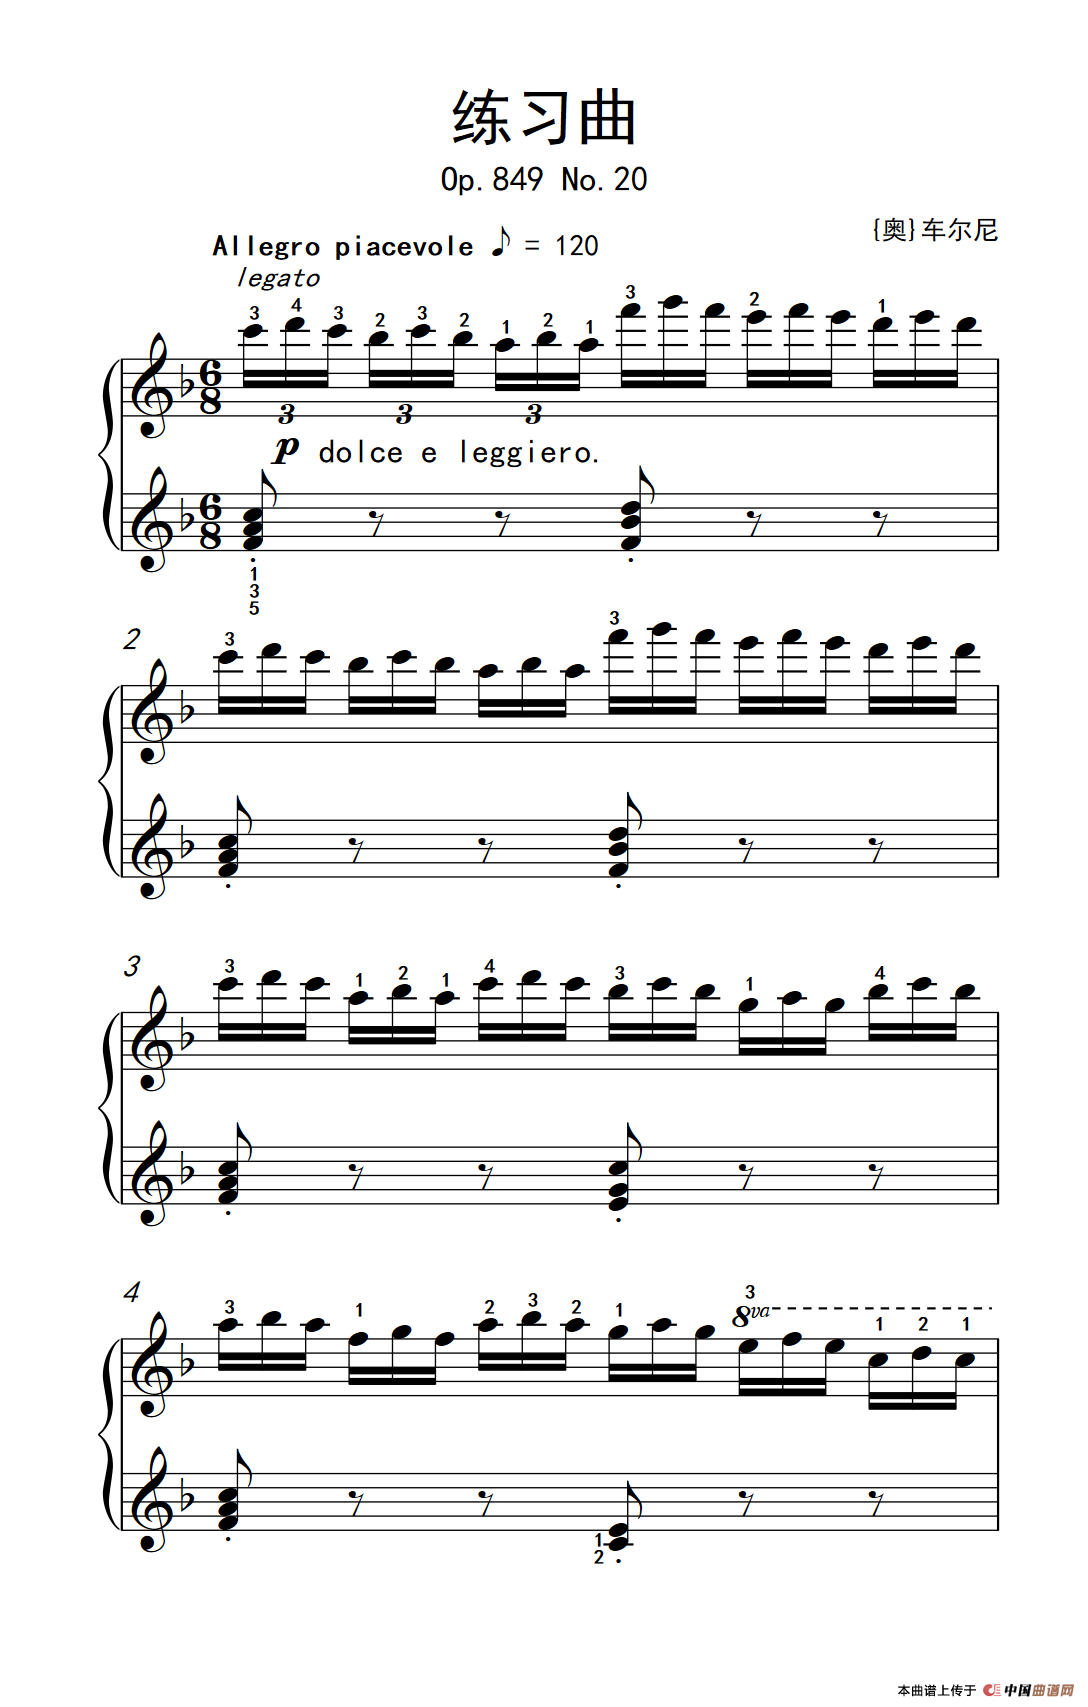 钢琴五级考试曲目谱子图片